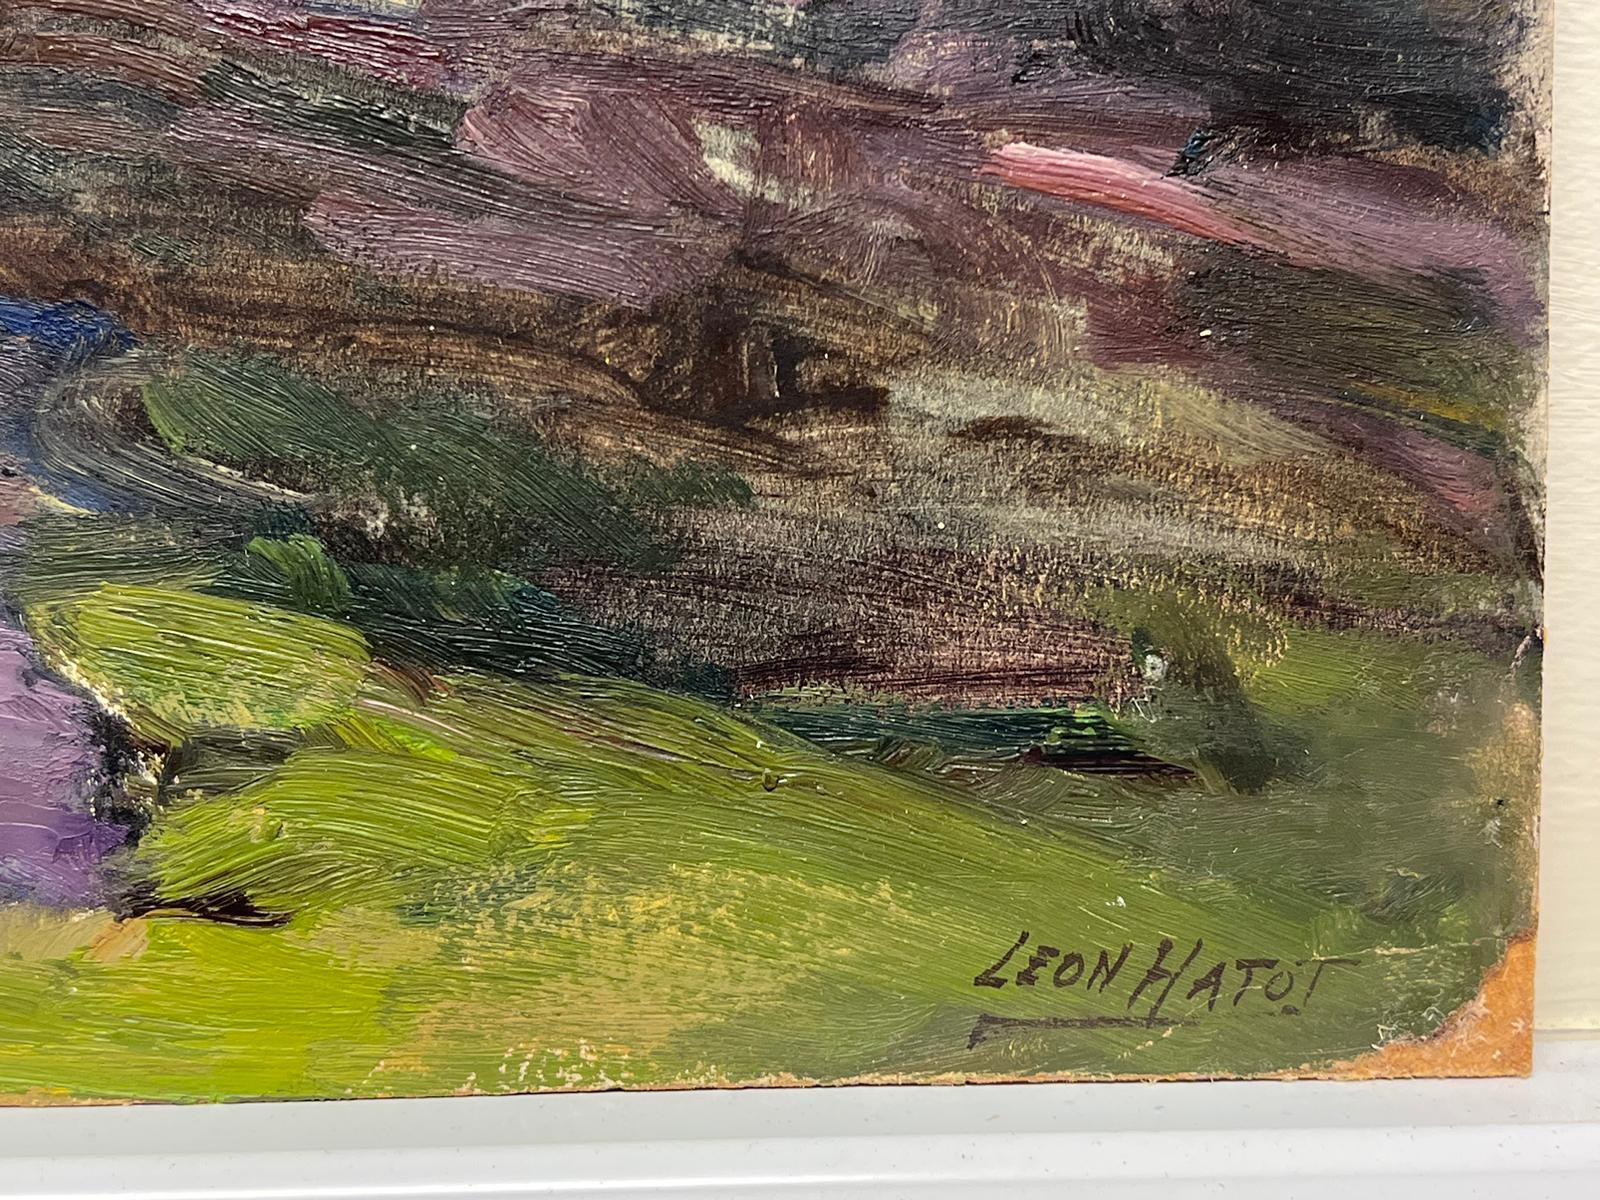 Peinture à l'huile française vintage Paysage des montagnes Rocheuses avec rivière violette - Painting de Leon Hatot